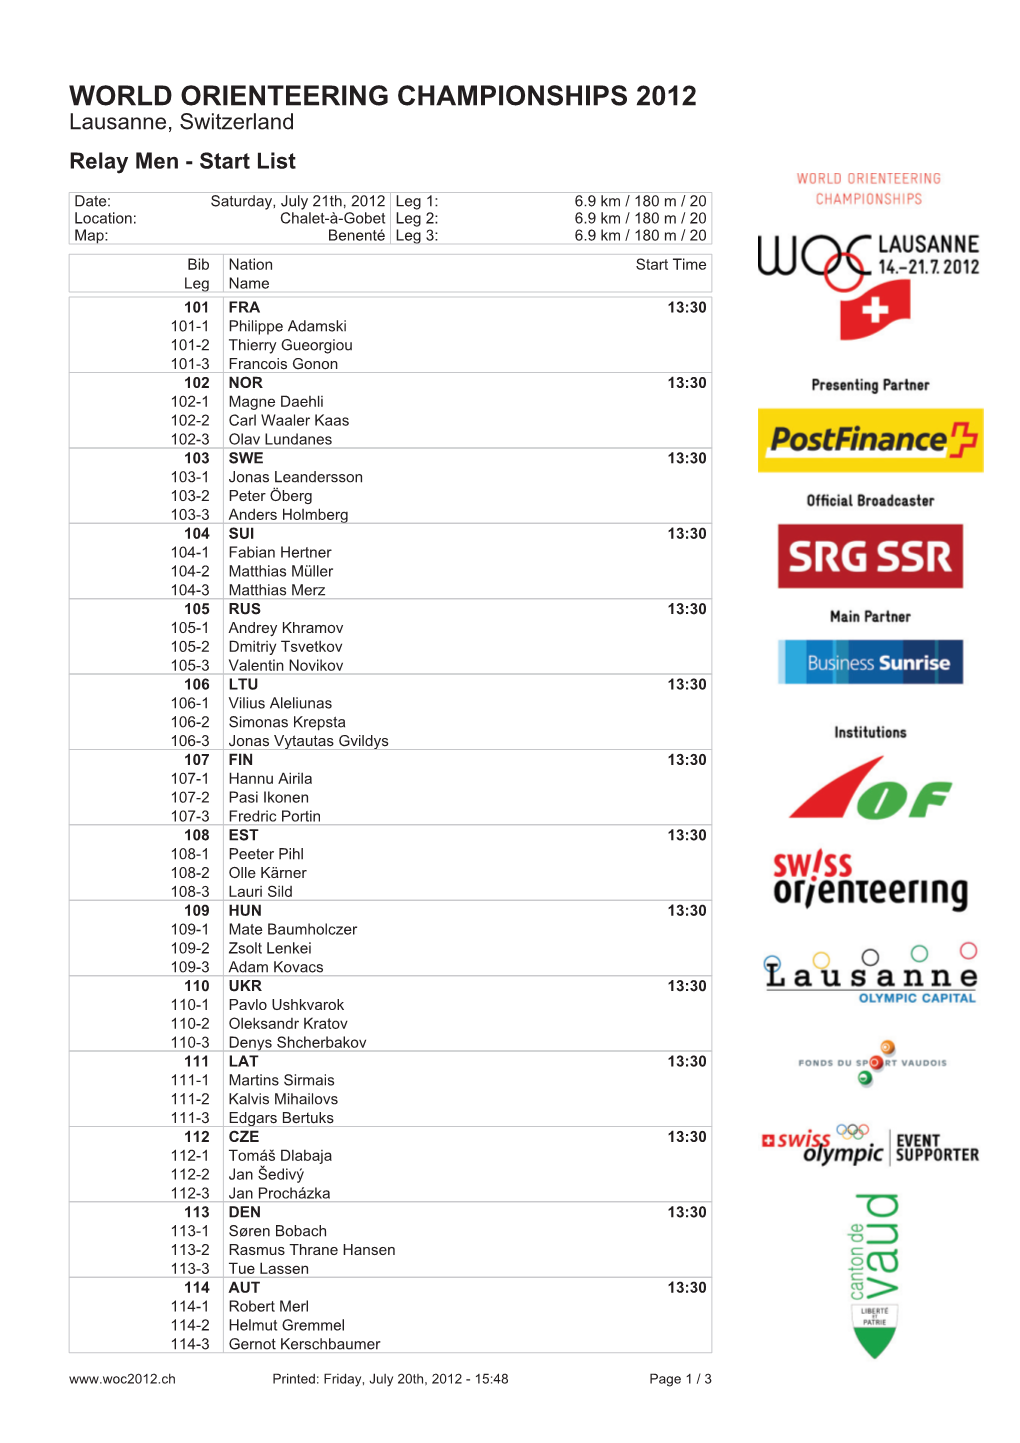 WORLD ORIENTEERING CHAMPIONSHIPS 2012 Lausanne, Switzerland Relay Men - Start List